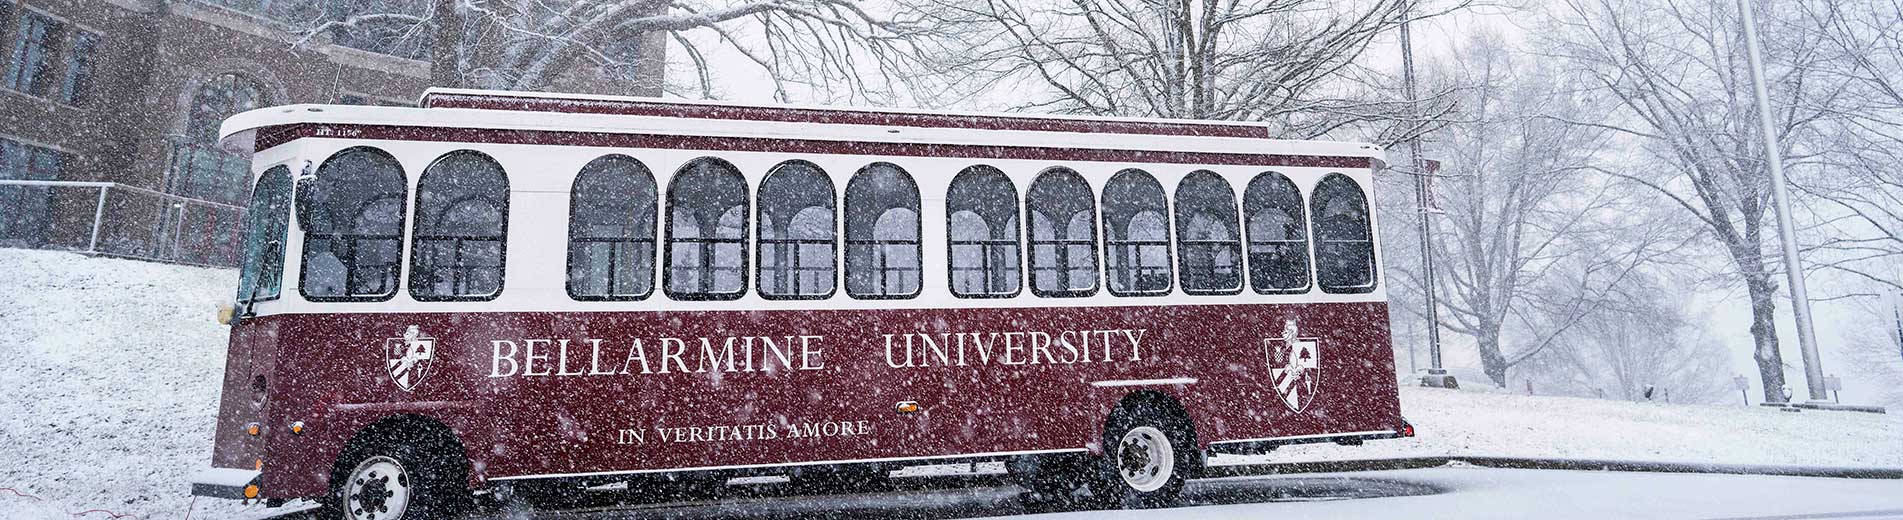 Bellarmine trolley in a snowfall